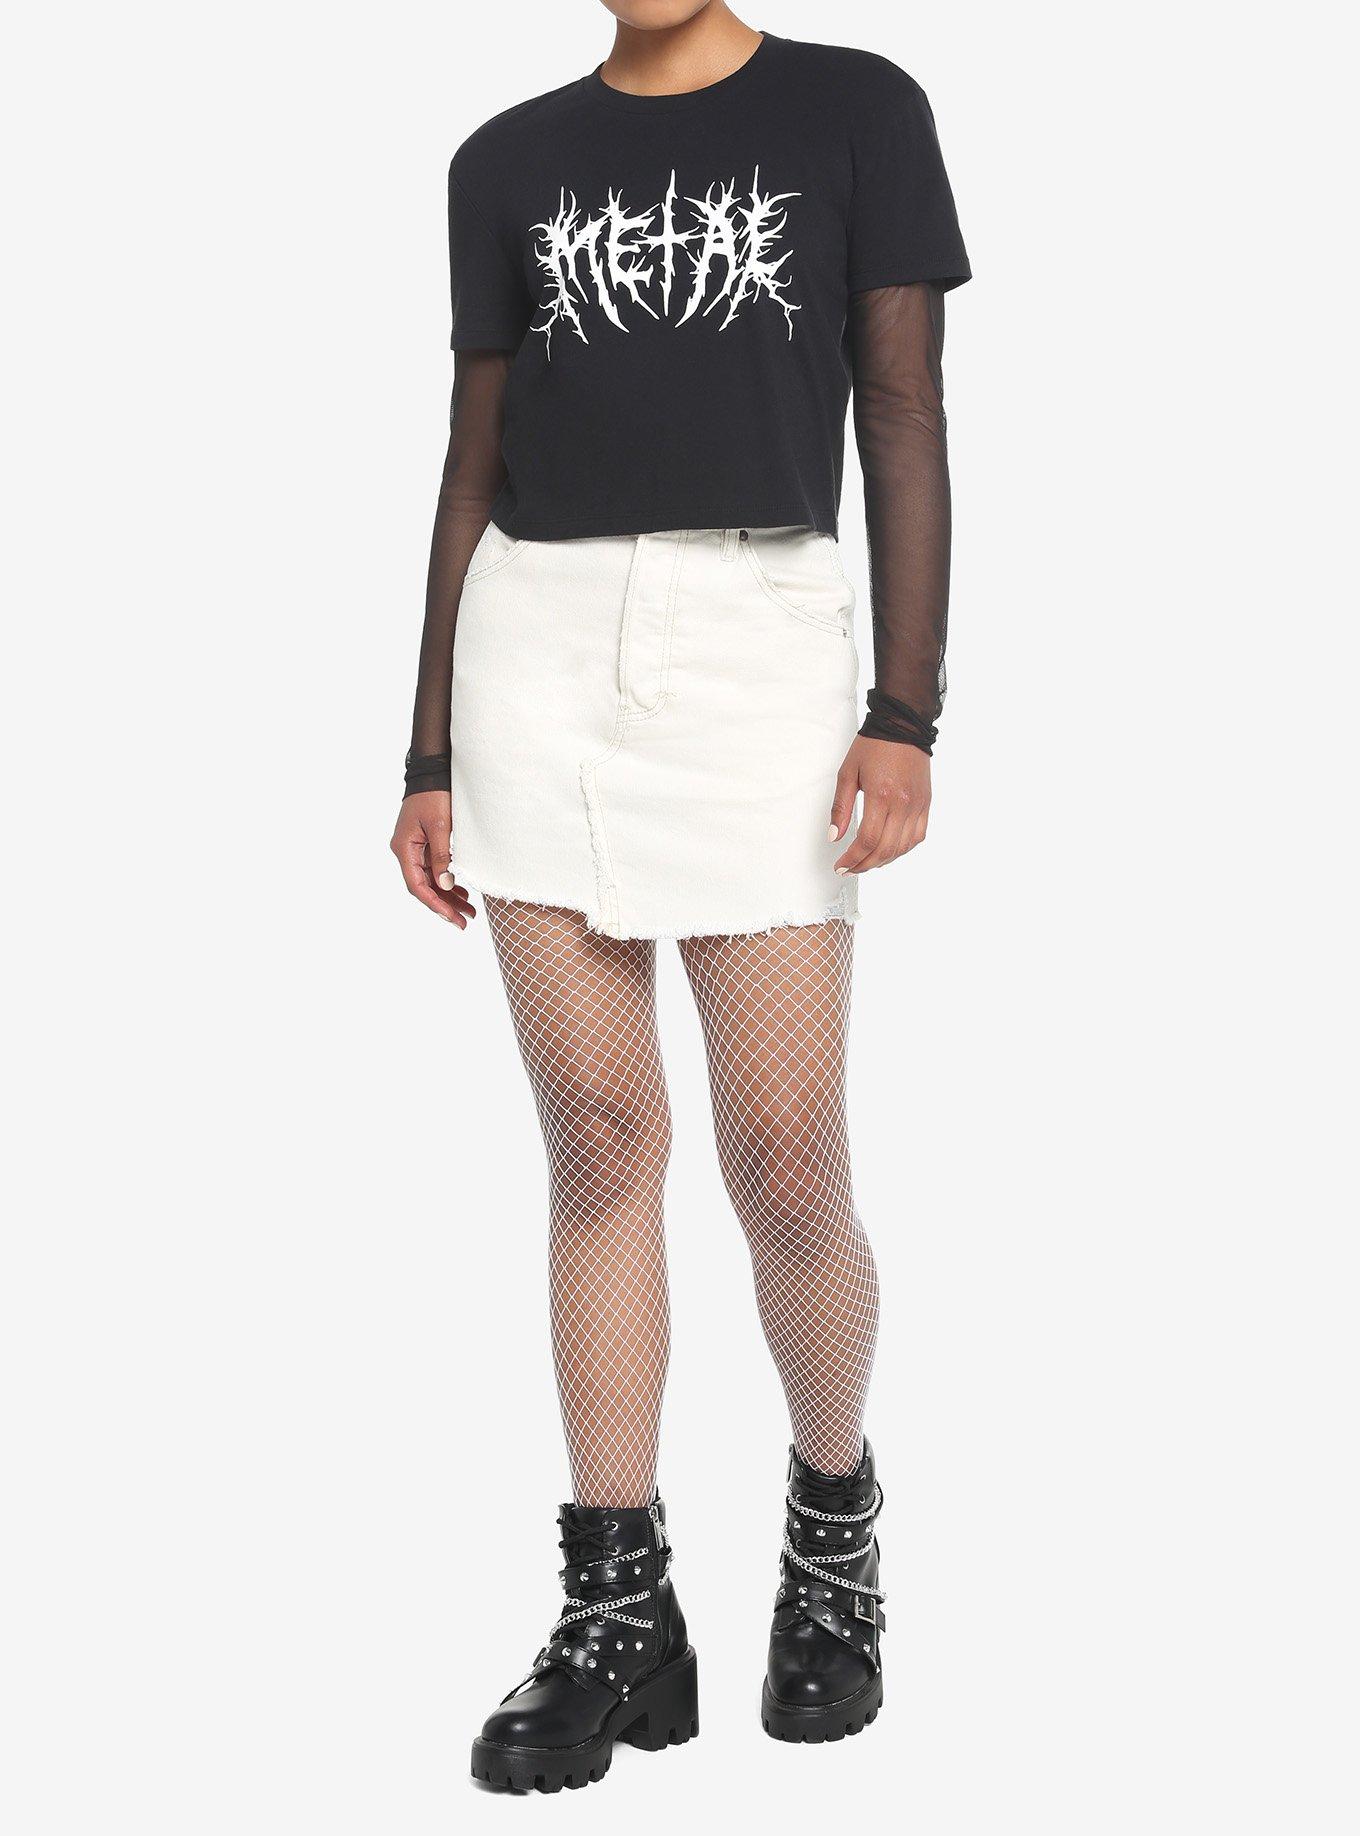 Metal Font Mesh Twofer Girls Long-Sleeve T-Shirt, BLACK, alternate